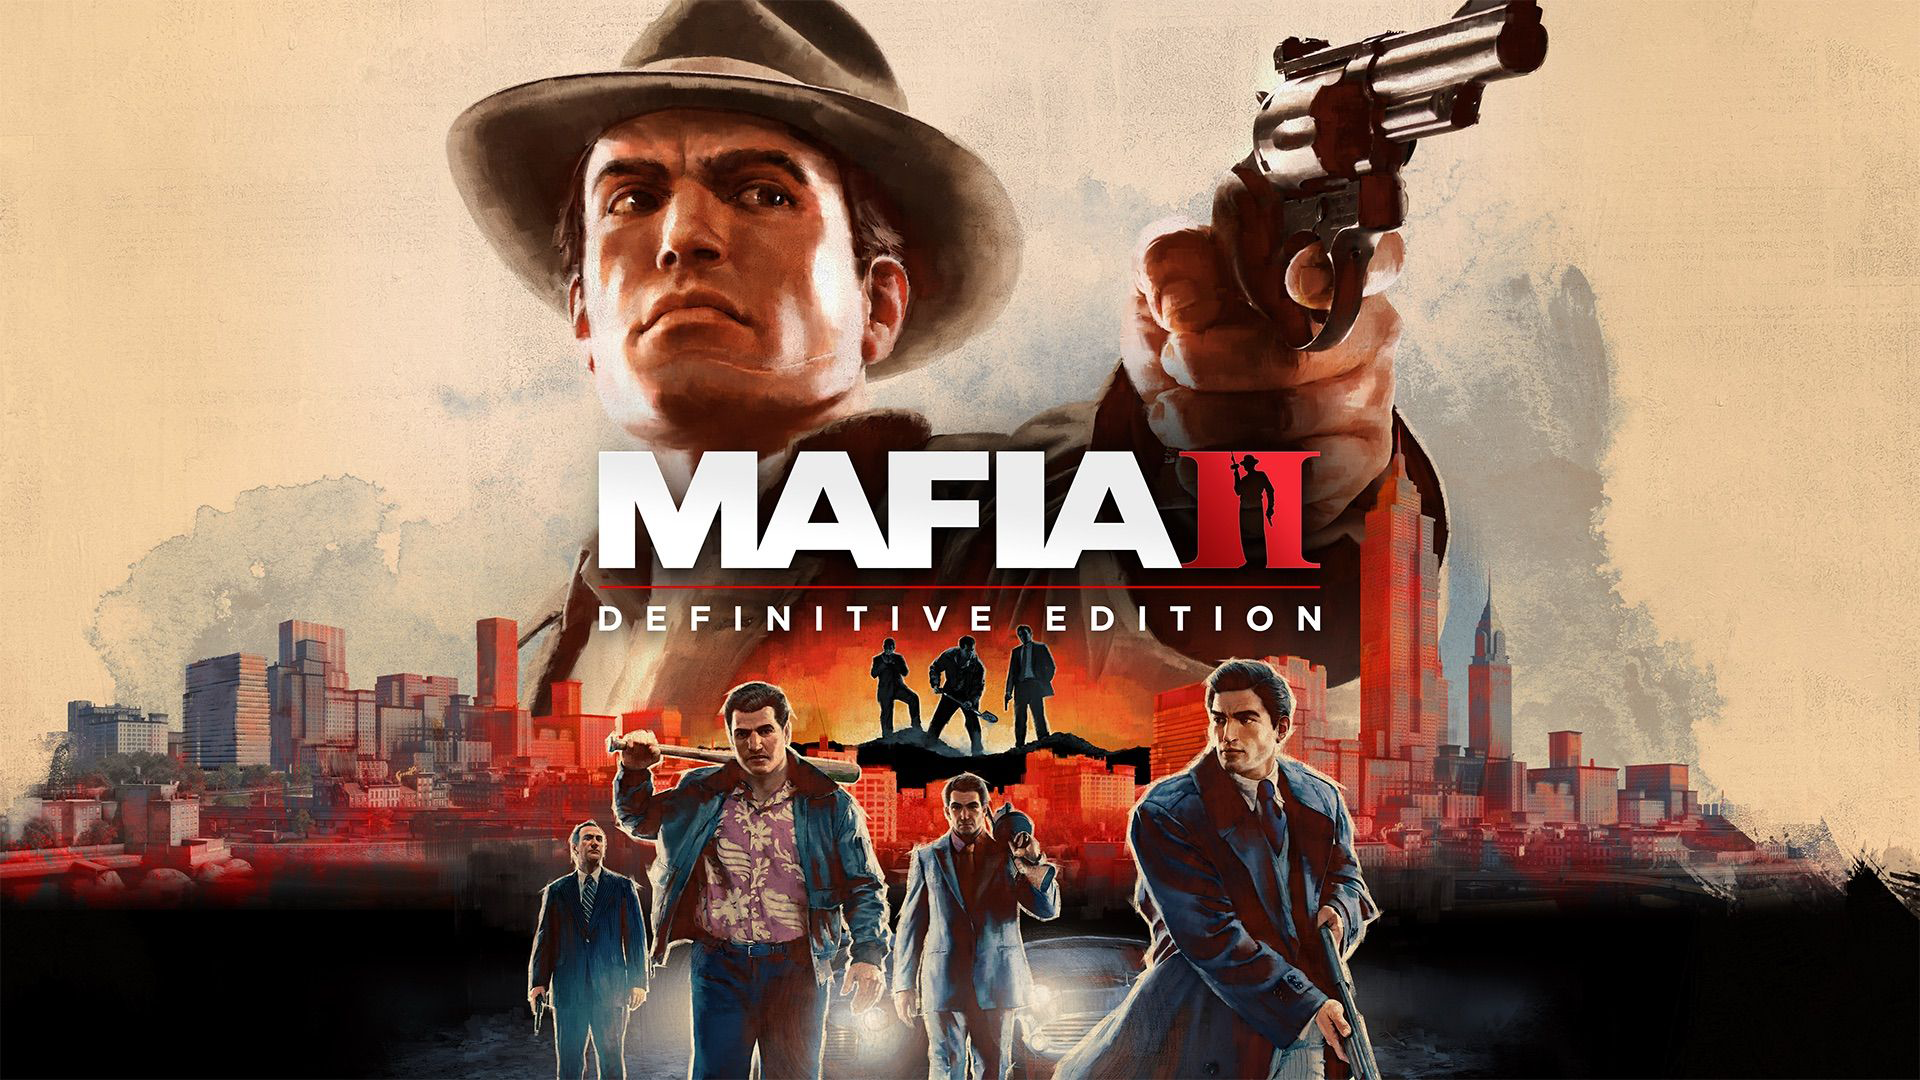 Mafia Game In Prison Cast